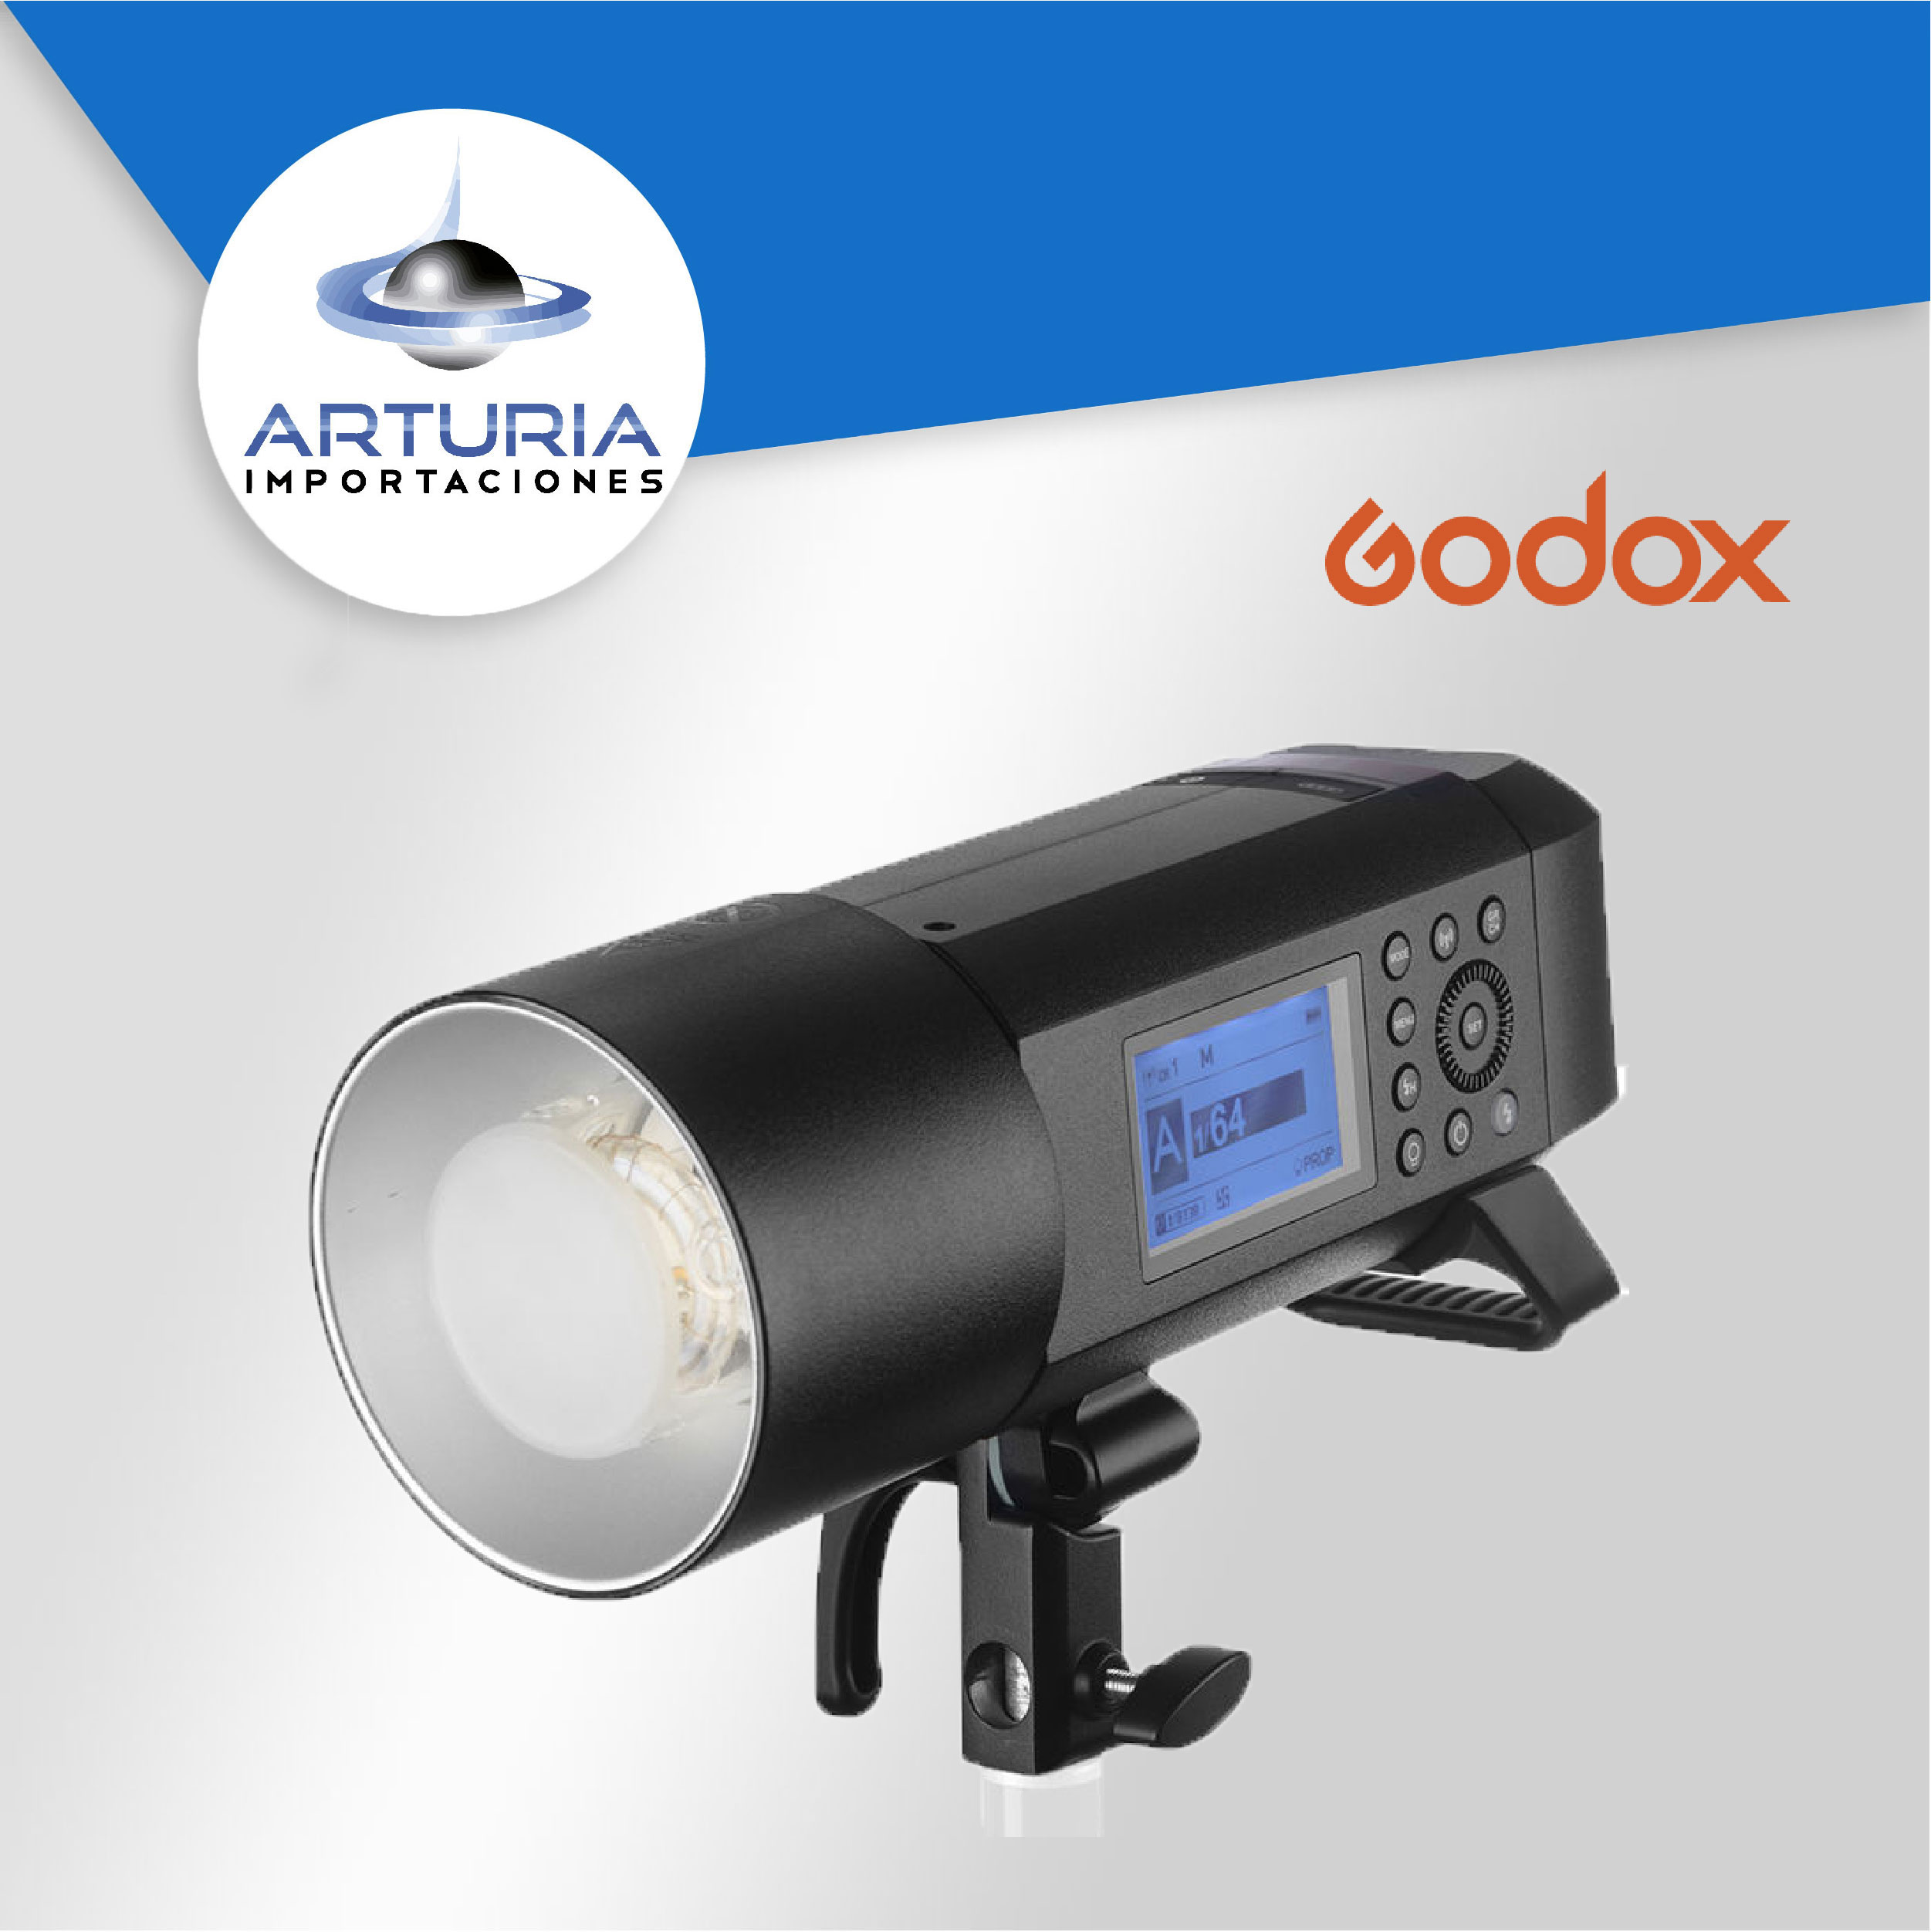 Godox AD300 Pro TTL Flash - Importaciones Arturia